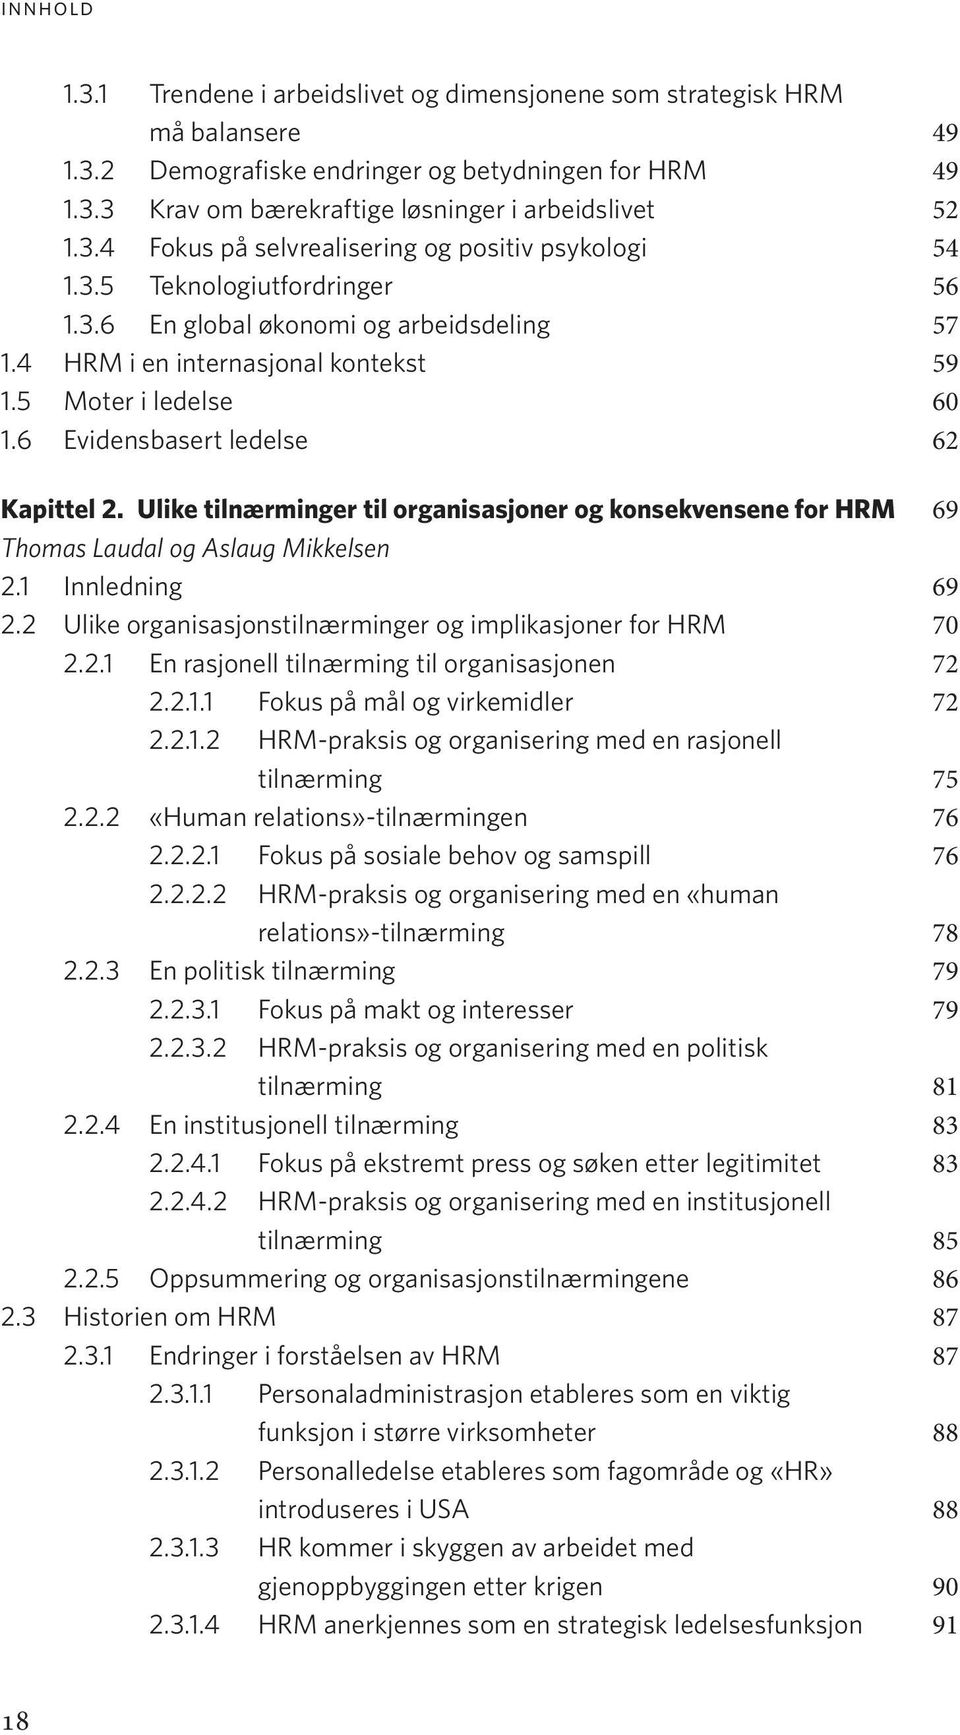 Ulike tilnærminger til organisasjoner og konsekvensene for HRM 69 Thomas Laudal og Aslaug Mikkelsen 2.1 Innledning 69 2.2 Ulike organisasjonstilnærminger og implikasjoner for HRM 70 2.2.1 En rasjonell tilnærming til organisasjonen 72 2.